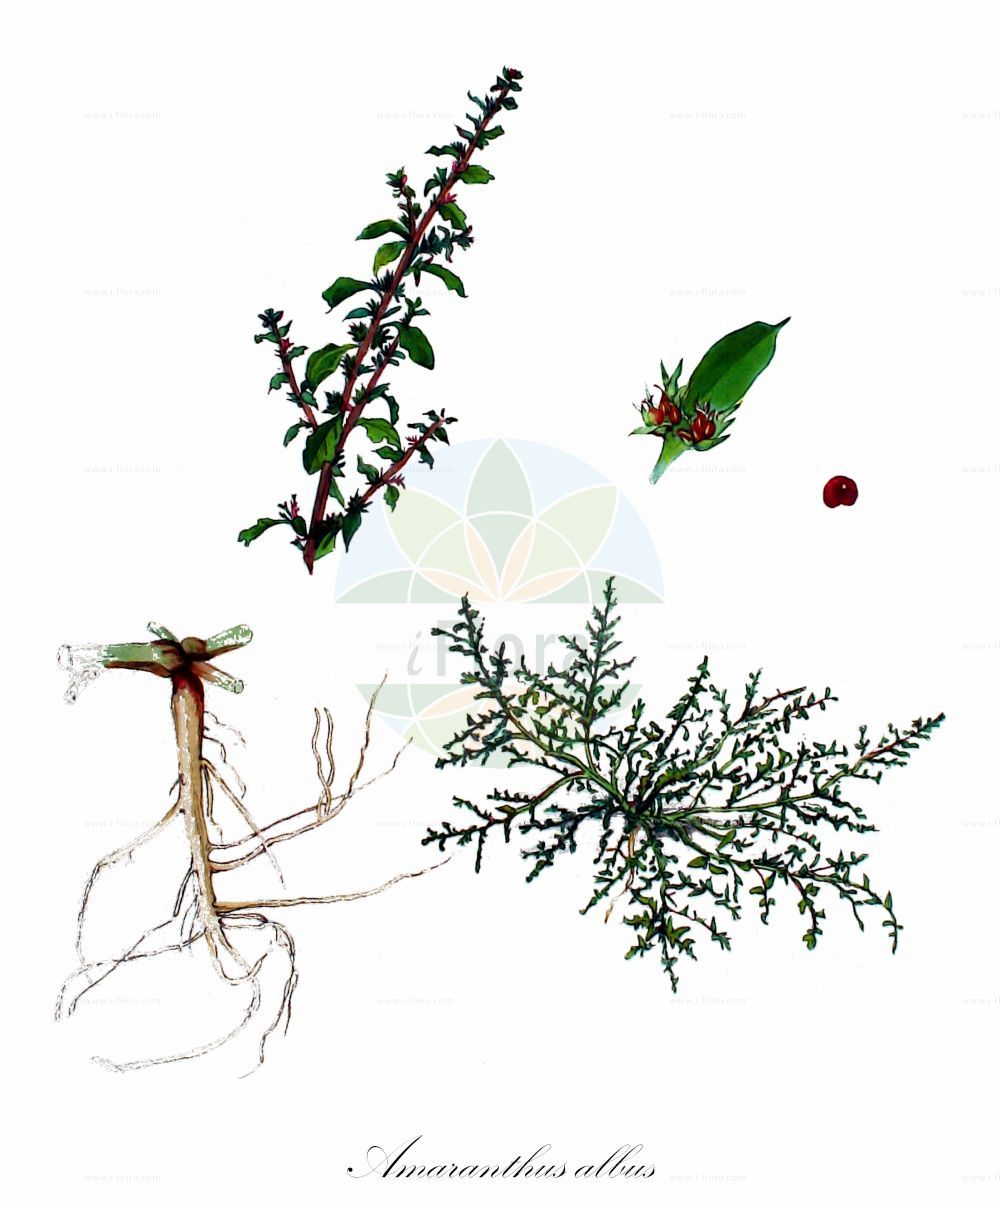 Historische Abbildung von Amaranthus albus (Weißer Fuchsschwanz - White Pigweed). Das Bild zeigt Blatt, Bluete, Frucht und Same. ---- Historical Drawing of Amaranthus albus (Weißer Fuchsschwanz - White Pigweed). The image is showing leaf, flower, fruit and seed.(Amaranthus albus,Weißer Fuchsschwanz,White Pigweed,Amaranthus albus,Glomeraria alba,Weisser Fuchsschwanz,Weisser Amarant,White Pigweed,Prostrate Pigweed,Tumble Amaranth,Mediterranean Amaranth,Tumble Pigweed,Tumbleweed,Tumbleweed Amaranth,Amaranthus,Fuchsschwanz,Pigweed,Amaranthaceae,Fuchsschwanzgewächse,Pigweed family,Blatt,Bluete,Frucht,Same,leaf,flower,fruit,seed,Kops (1800-1934))